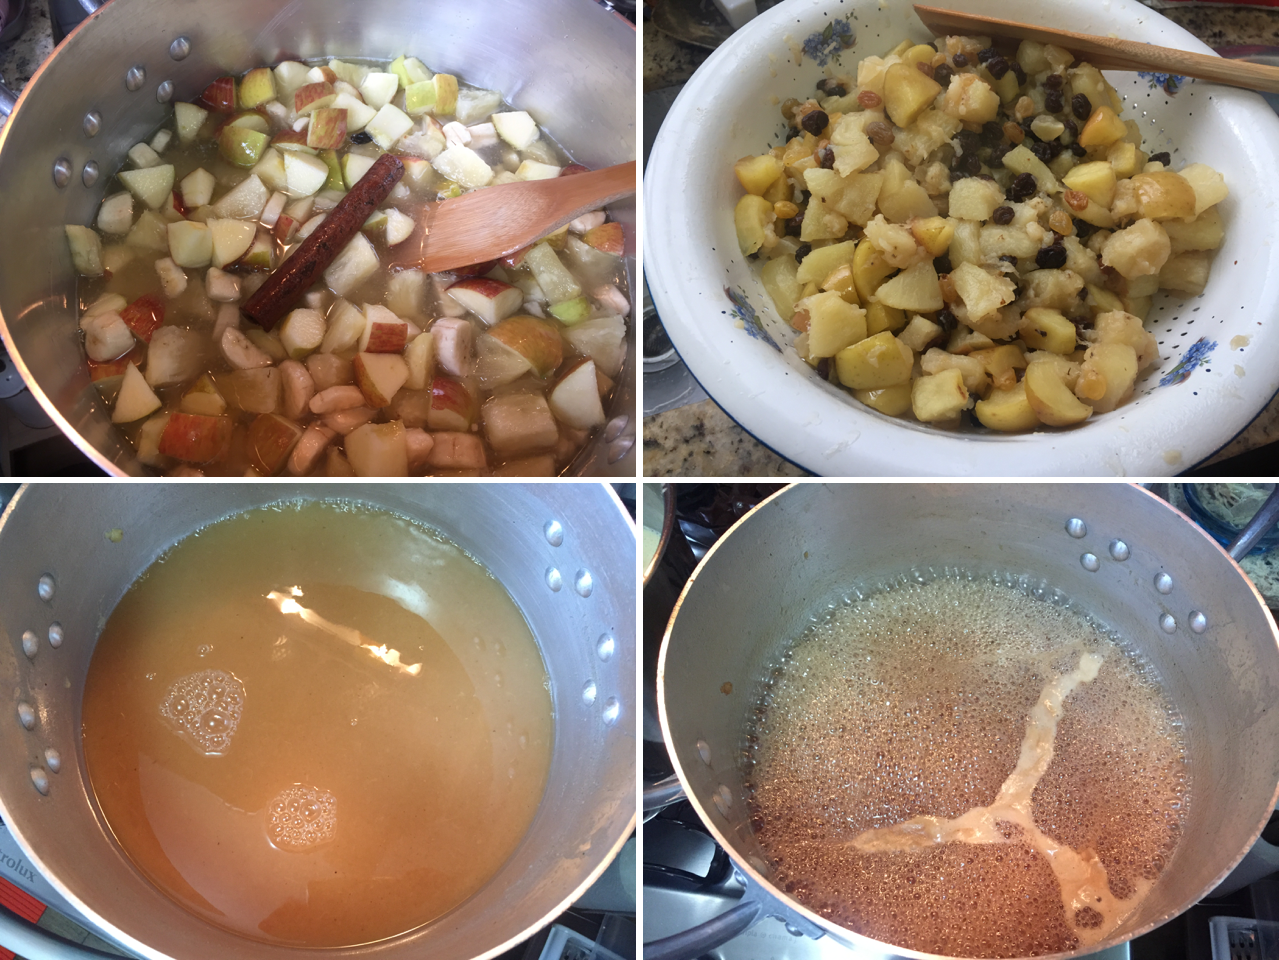 Da esquerda para direita : Salada de frutas em cozimento / Salda de frutas já cozida e escorrida / Calda do escorrimento / Calda em cozimento no ponto de fio